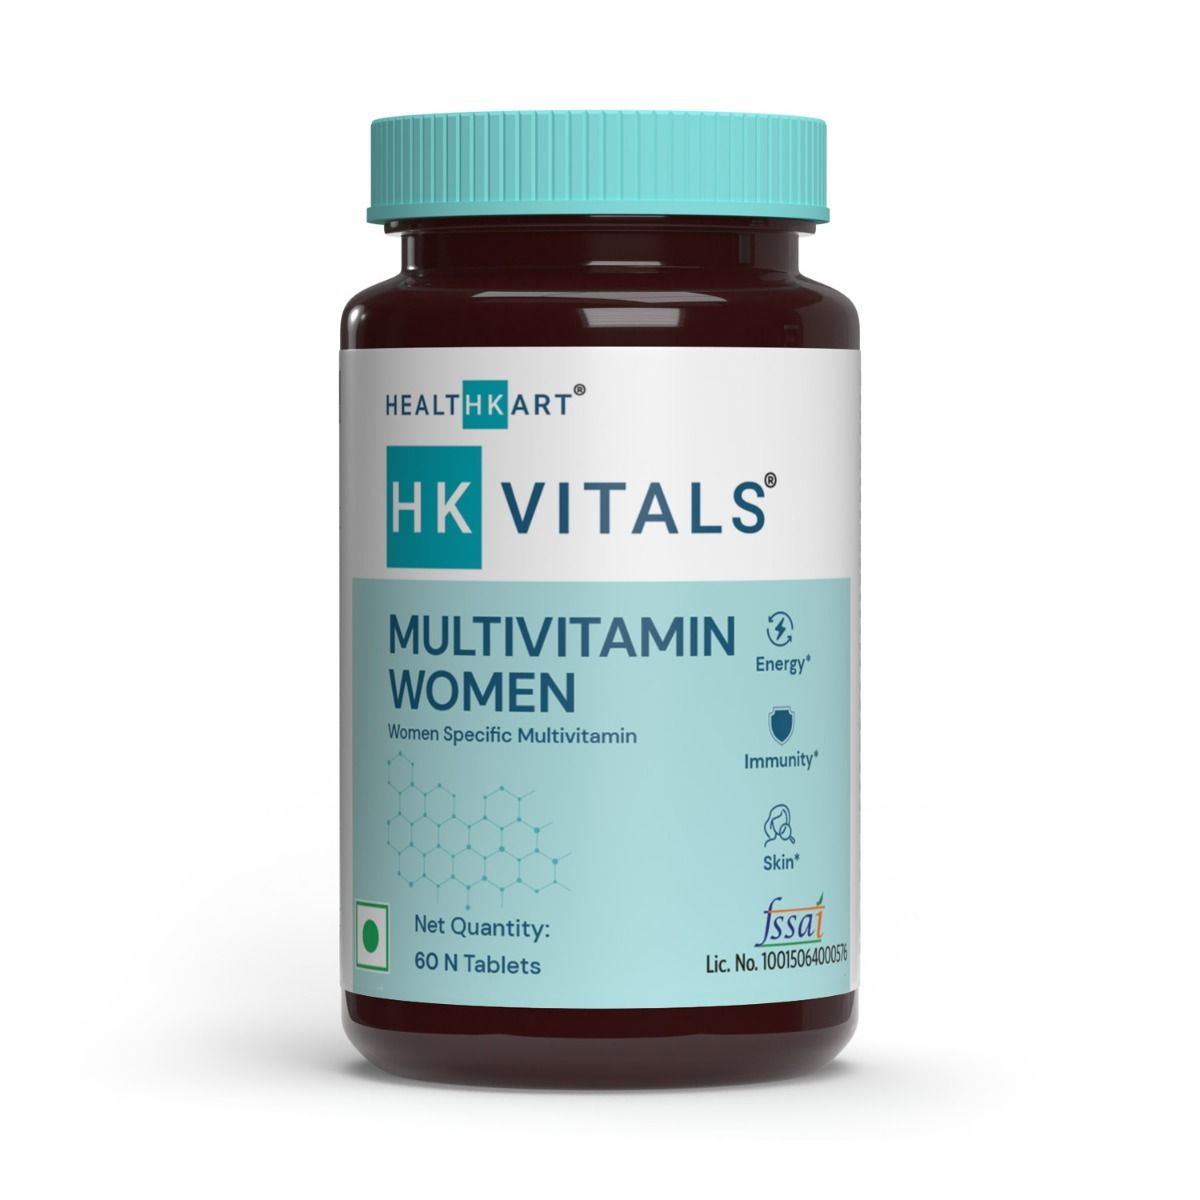 Buy HealthKart HK Vitals Multivitamin Women, 60 Tablets Online